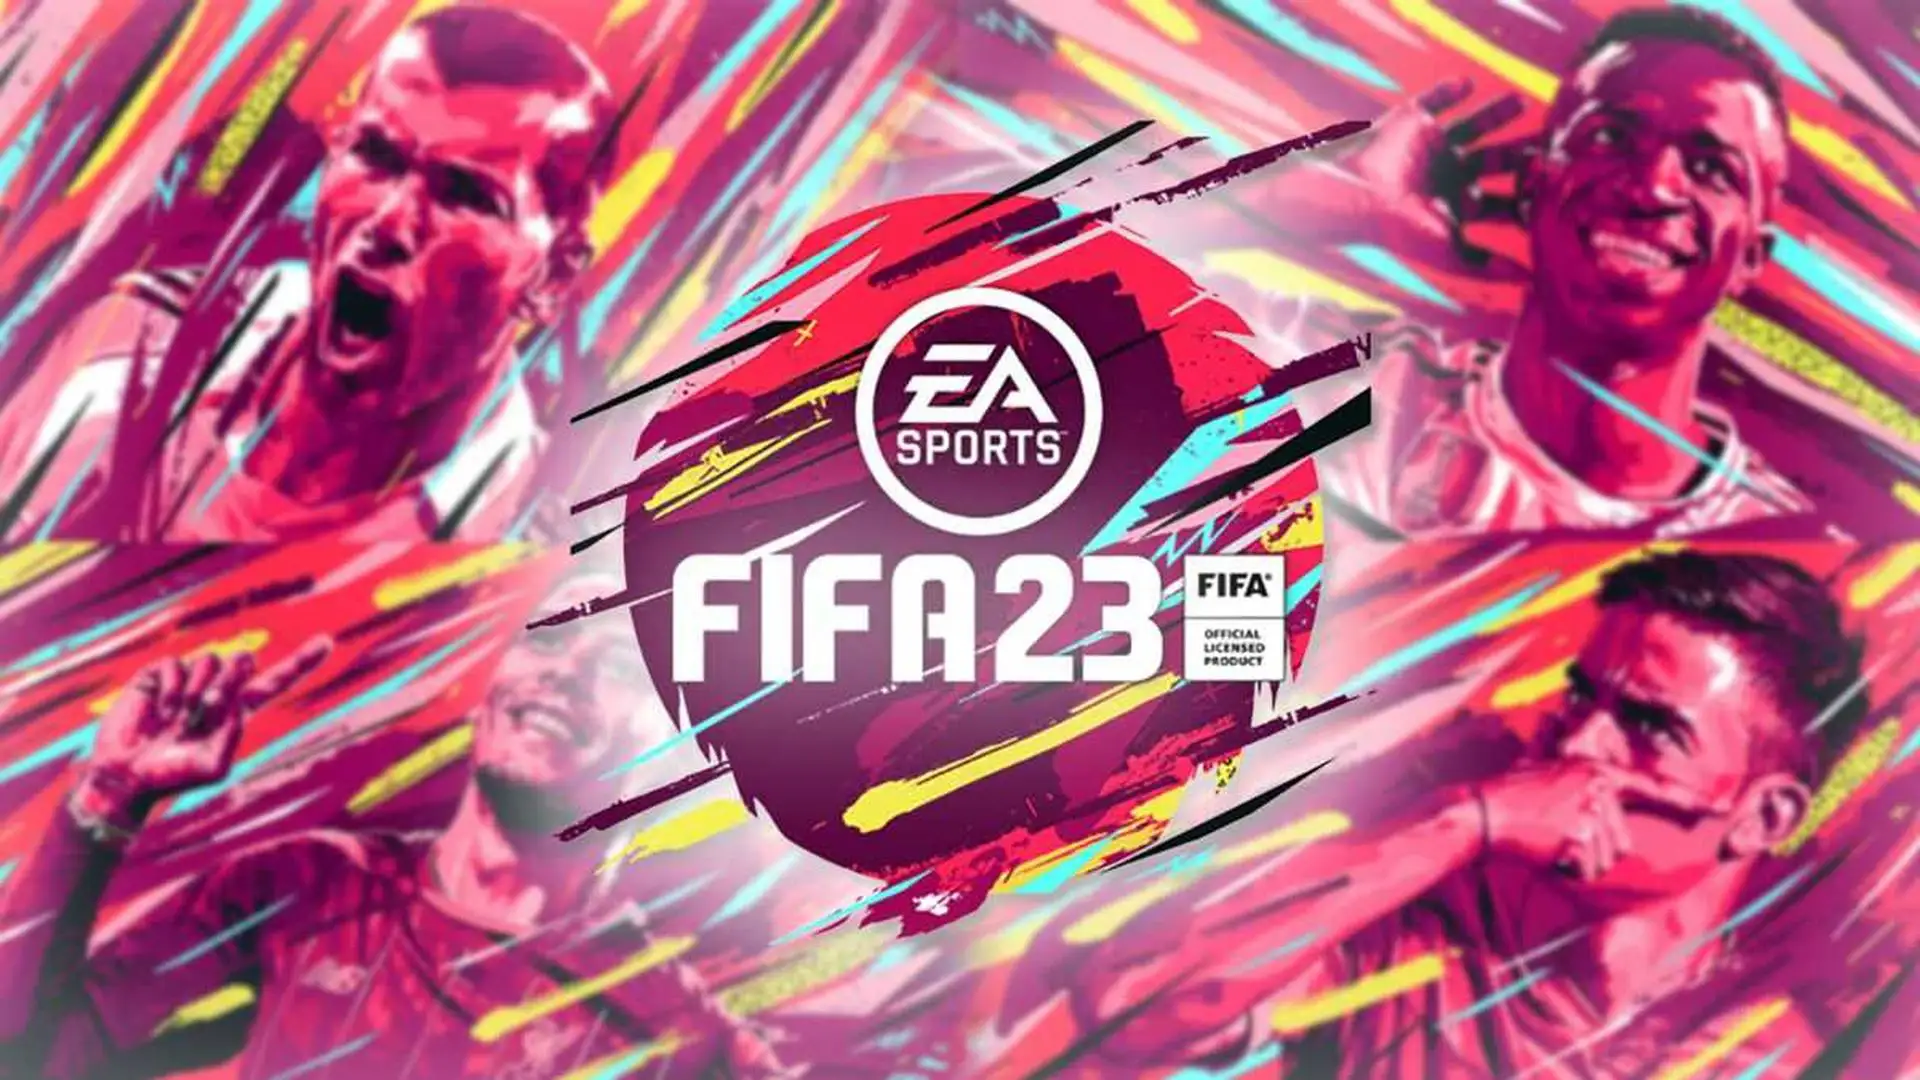 Саундтрек FIFA 23. Более 100 треков из 34 стран мира